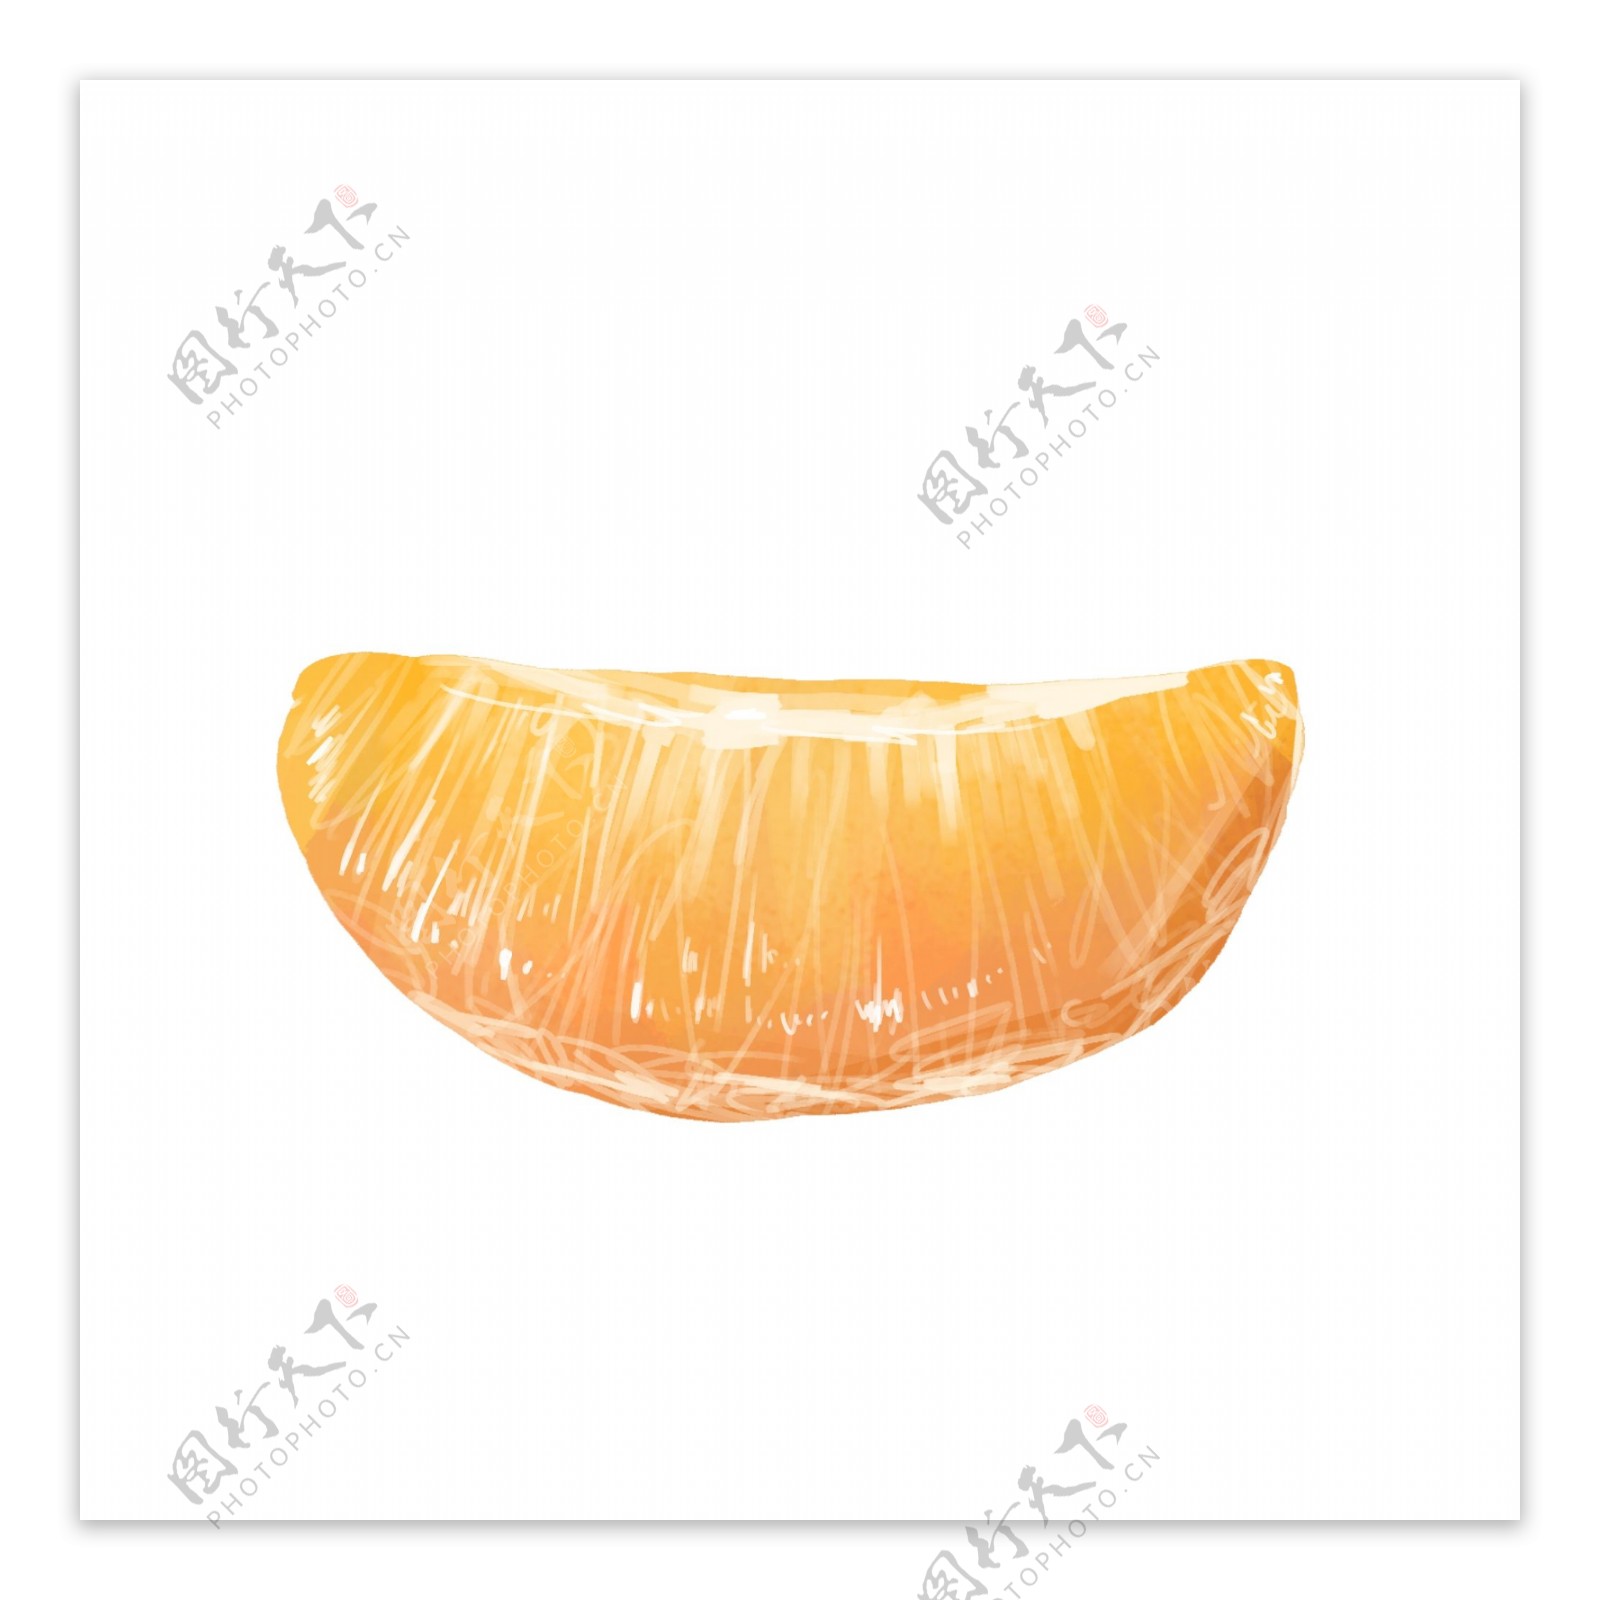 夏天夏季水果橘子